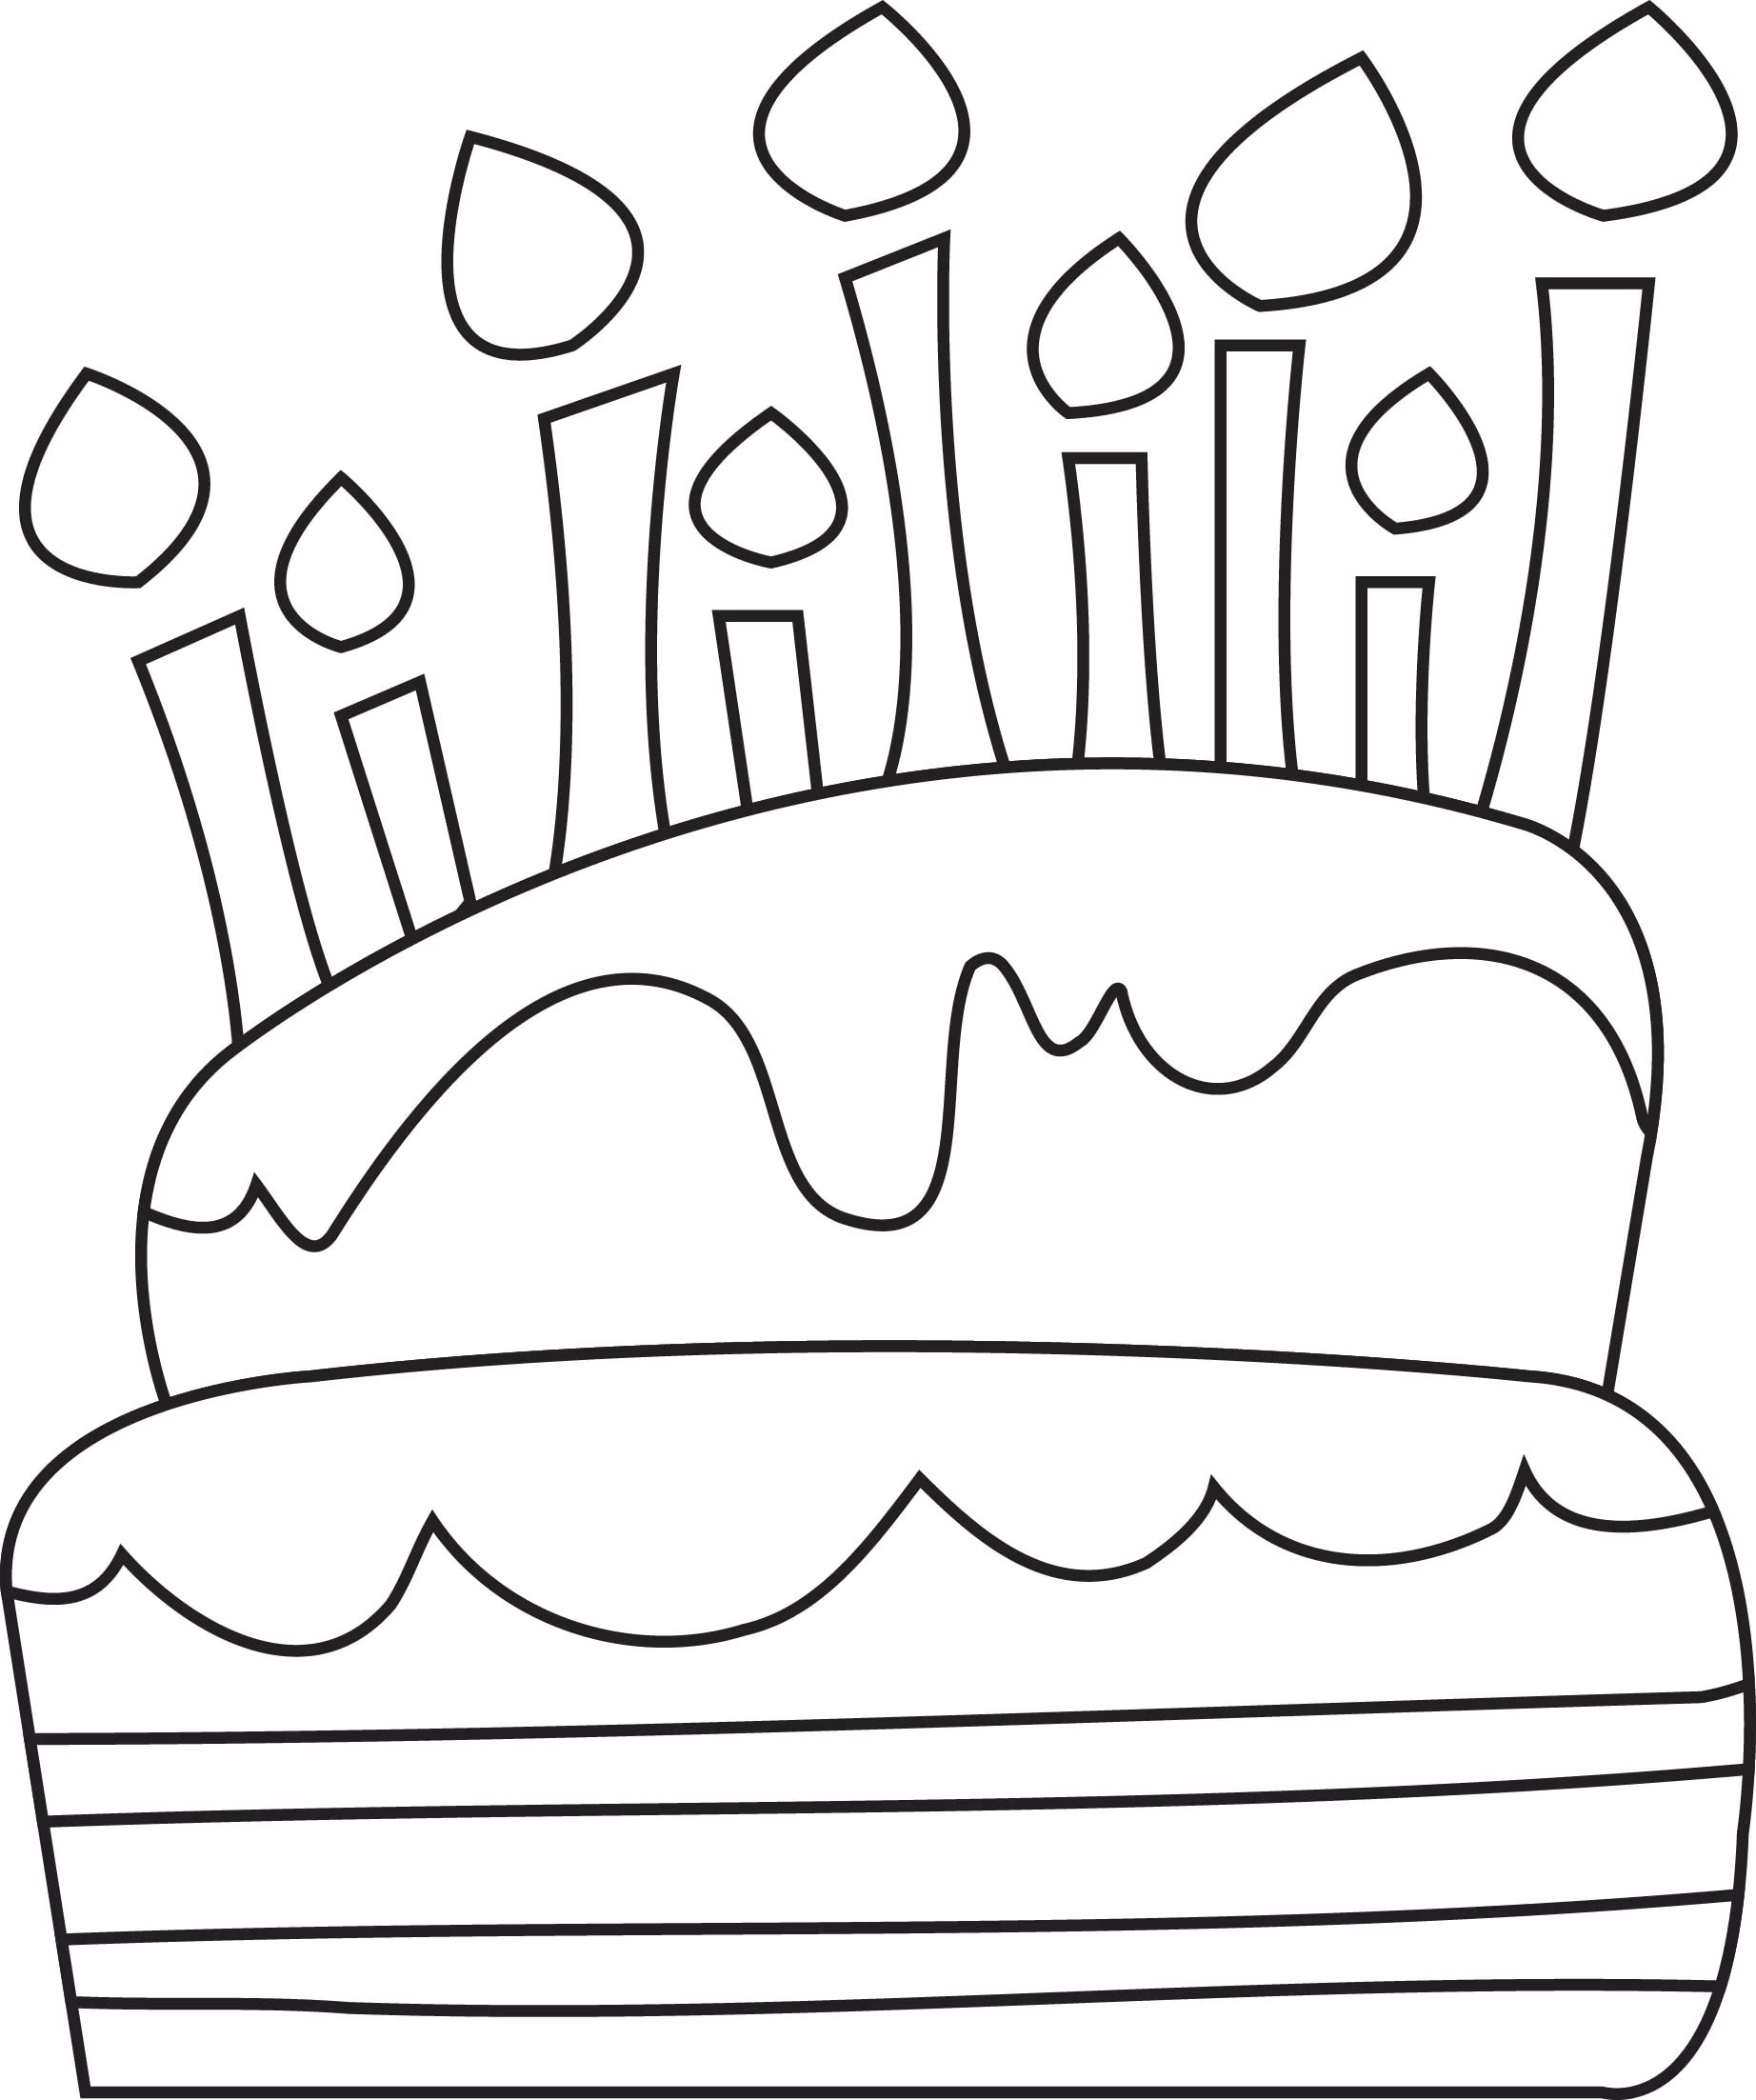 Шаблон торта для рисования для детей